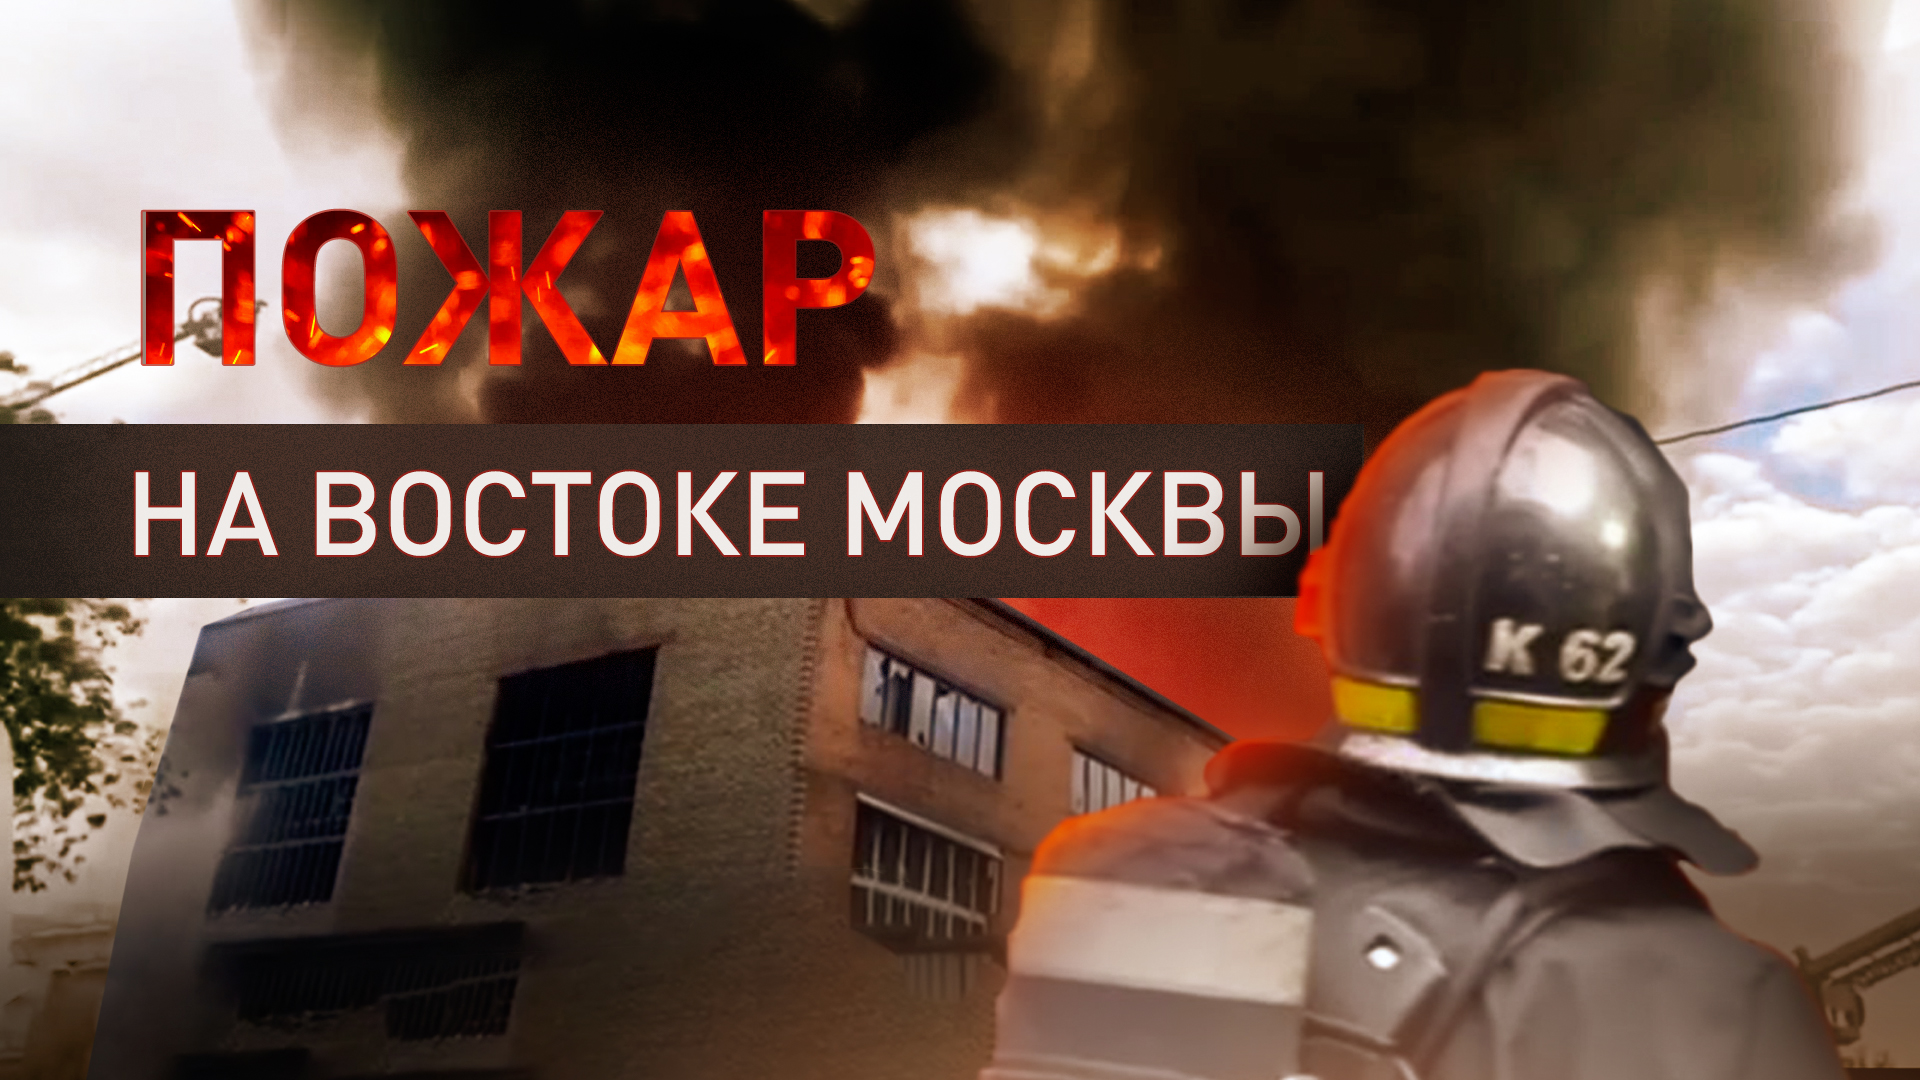 Сотрудники МЧС локализовали крупный пожар на складе в Москве